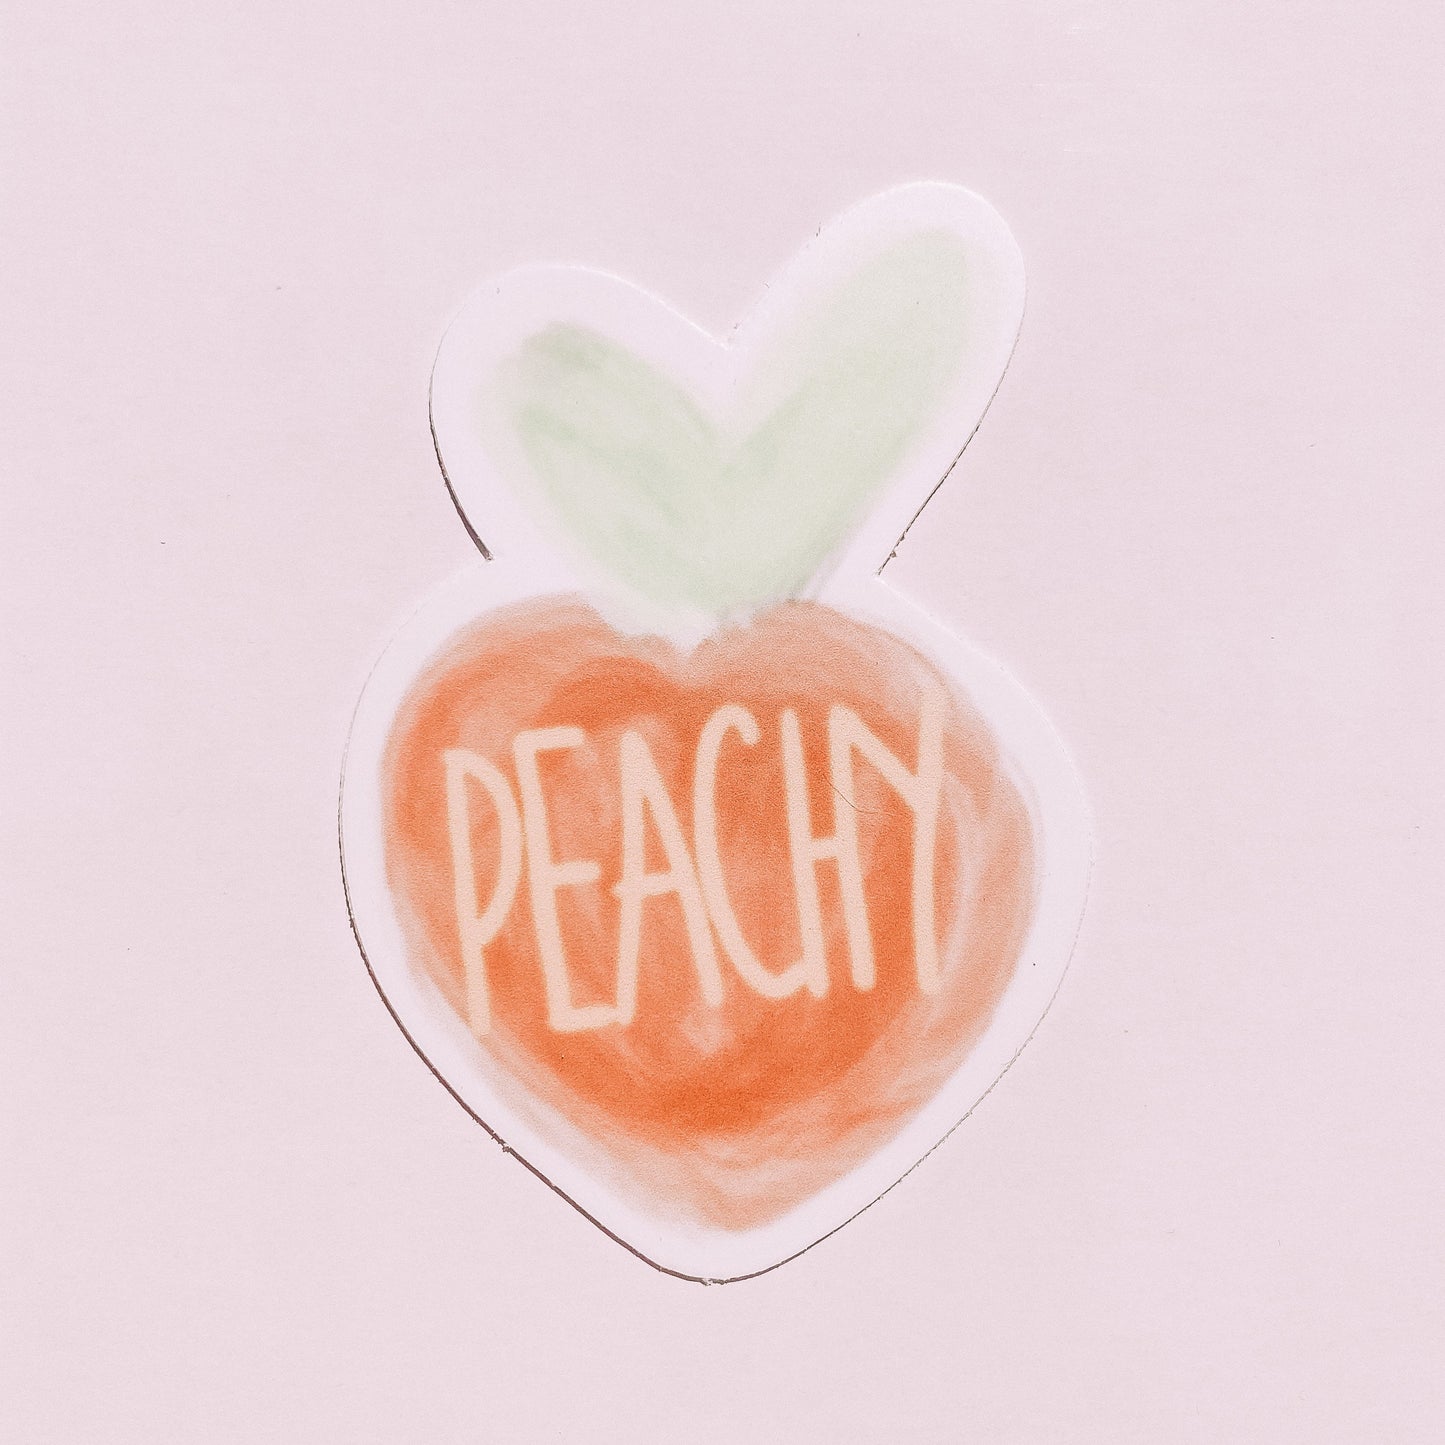 CLEAR Peachy Sticker